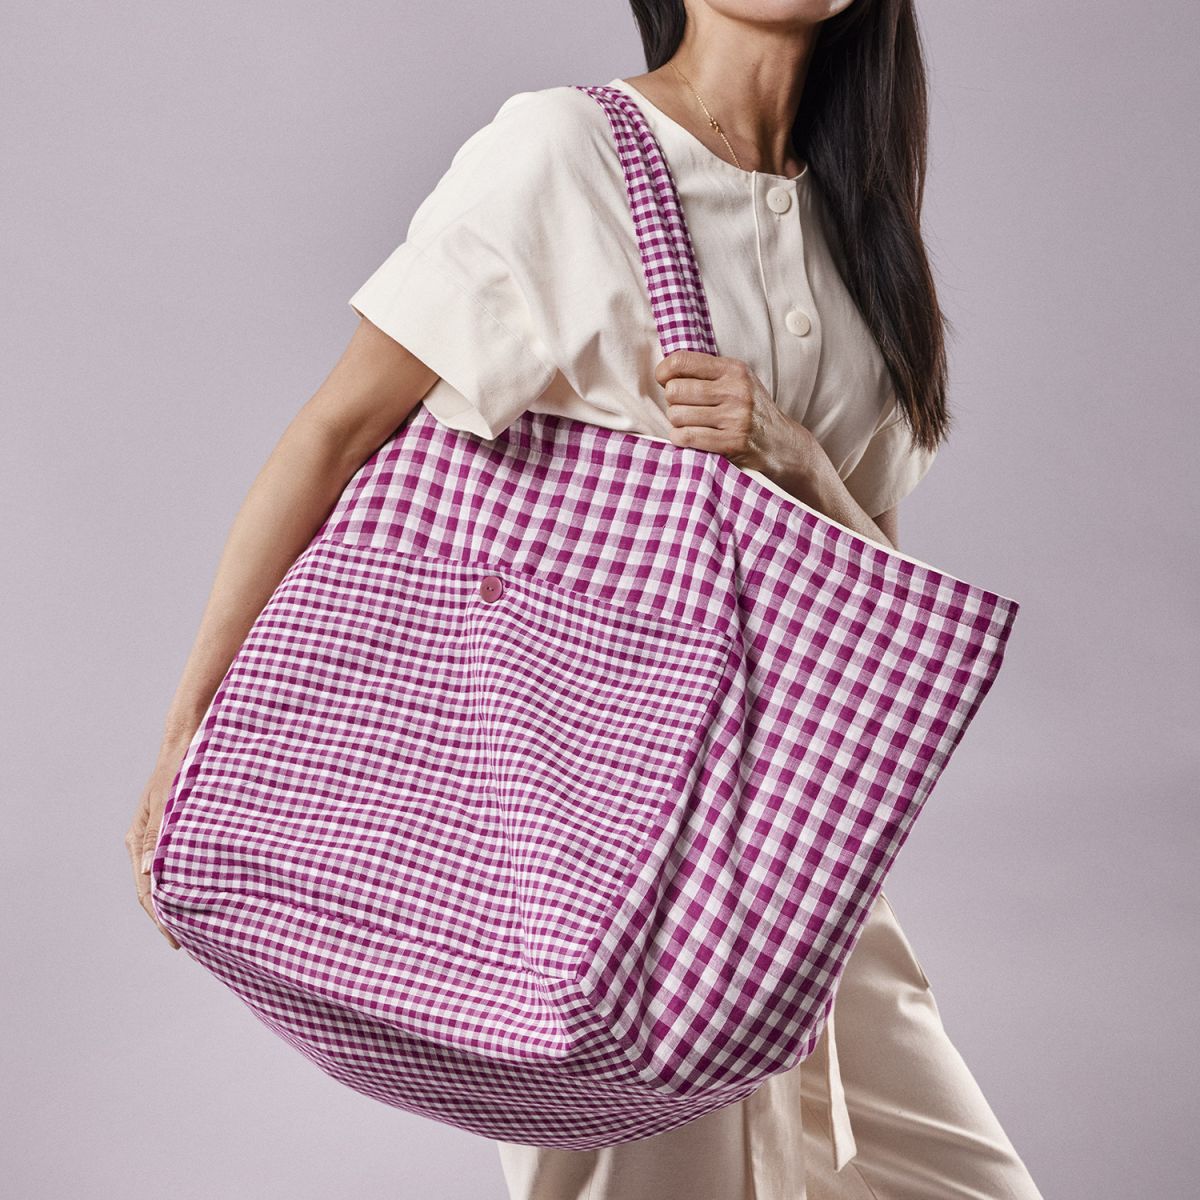 Atelier Brunette - LE Sac De Plage Bag Sewing Pattern – Lamazi Fabrics